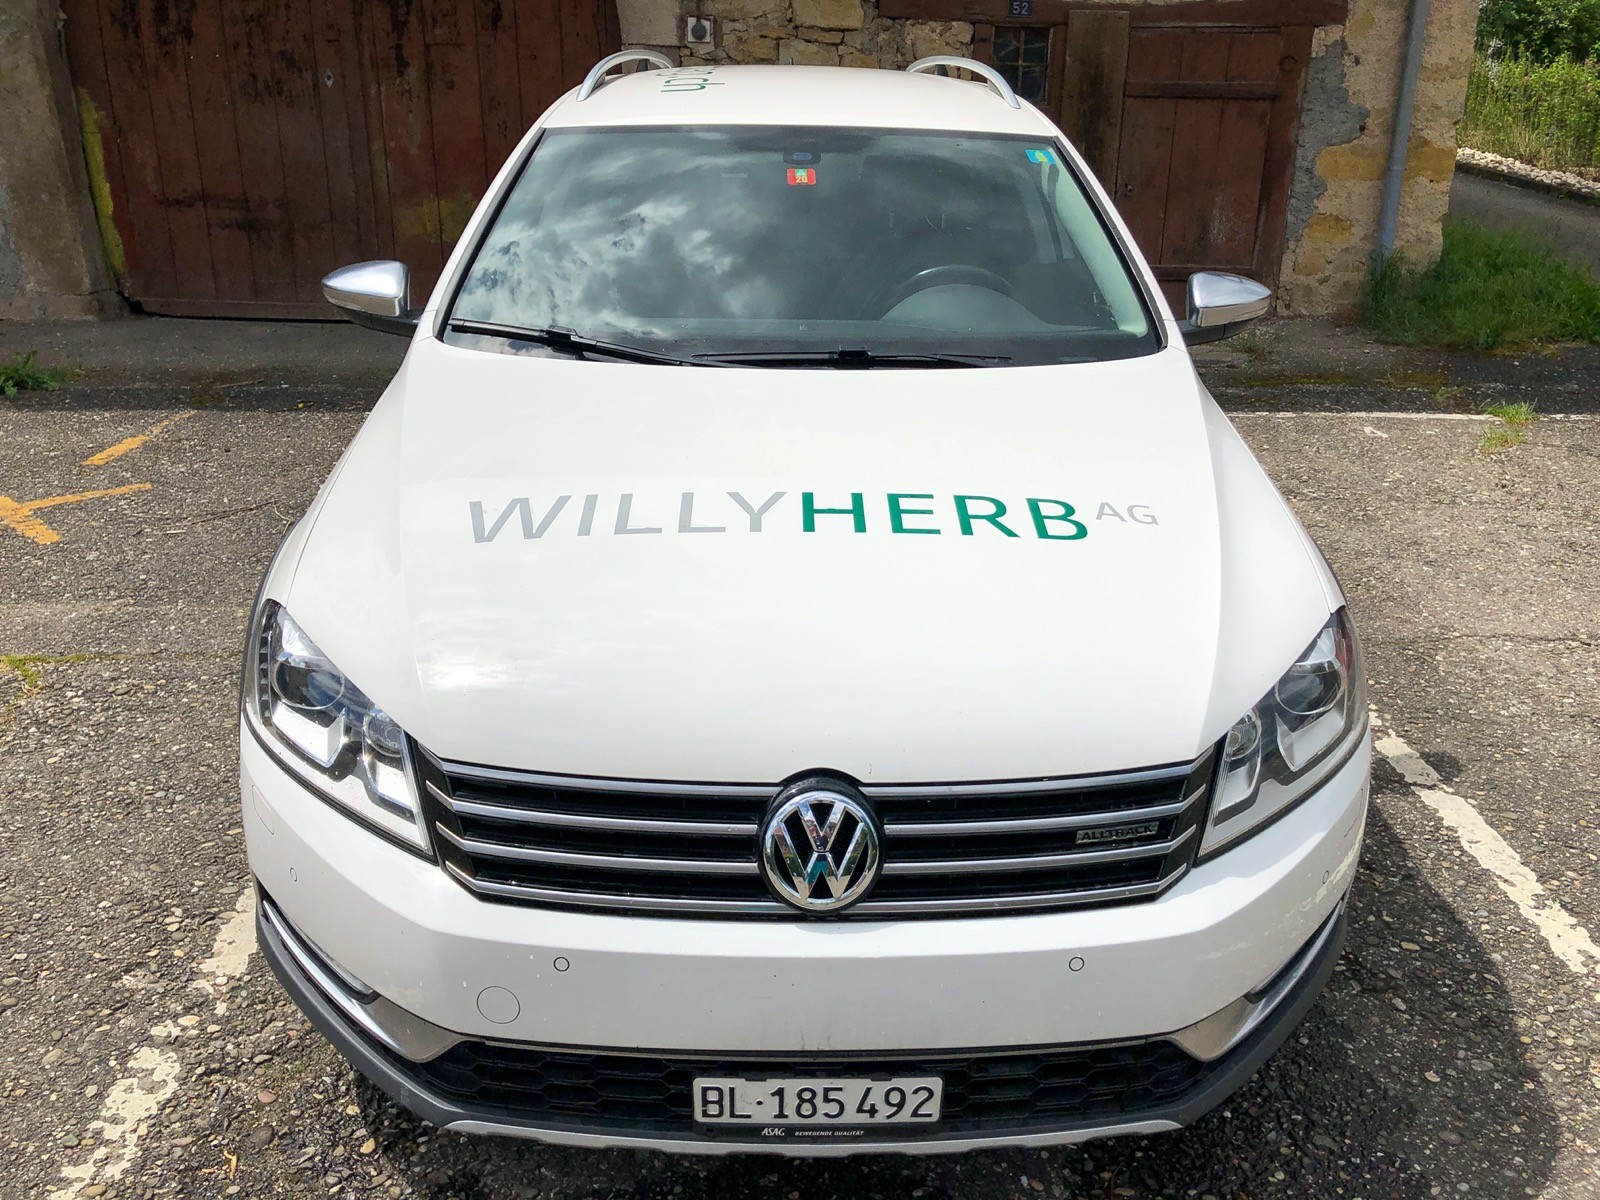 Ein weiteres Fahrzeug für die Fa. Willy Herb AG beschriftet